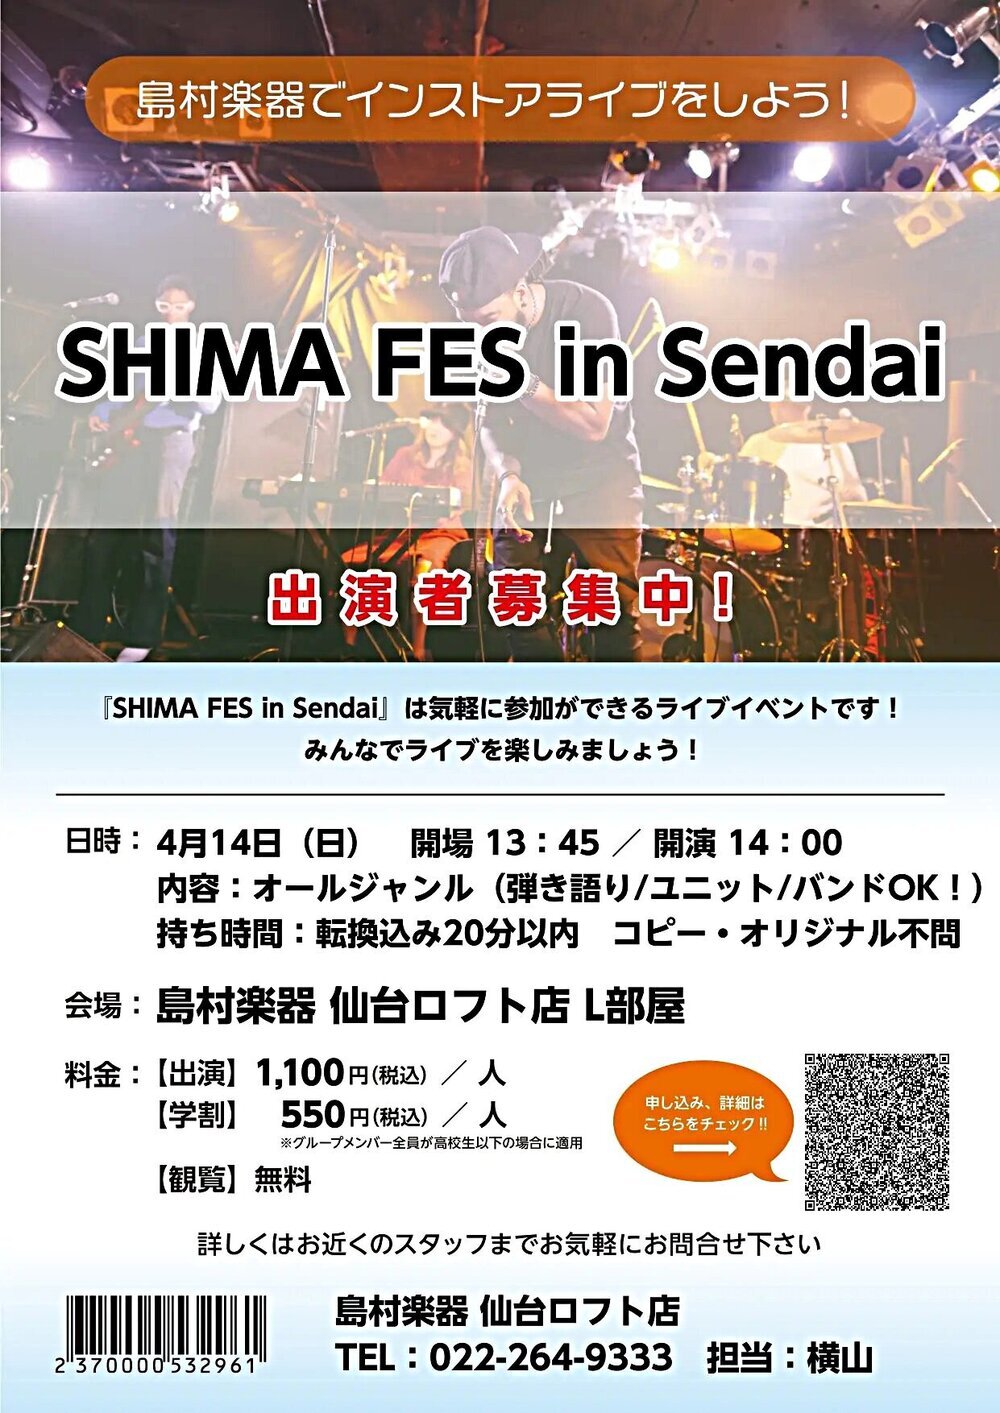 SHIMA FES in Sendai